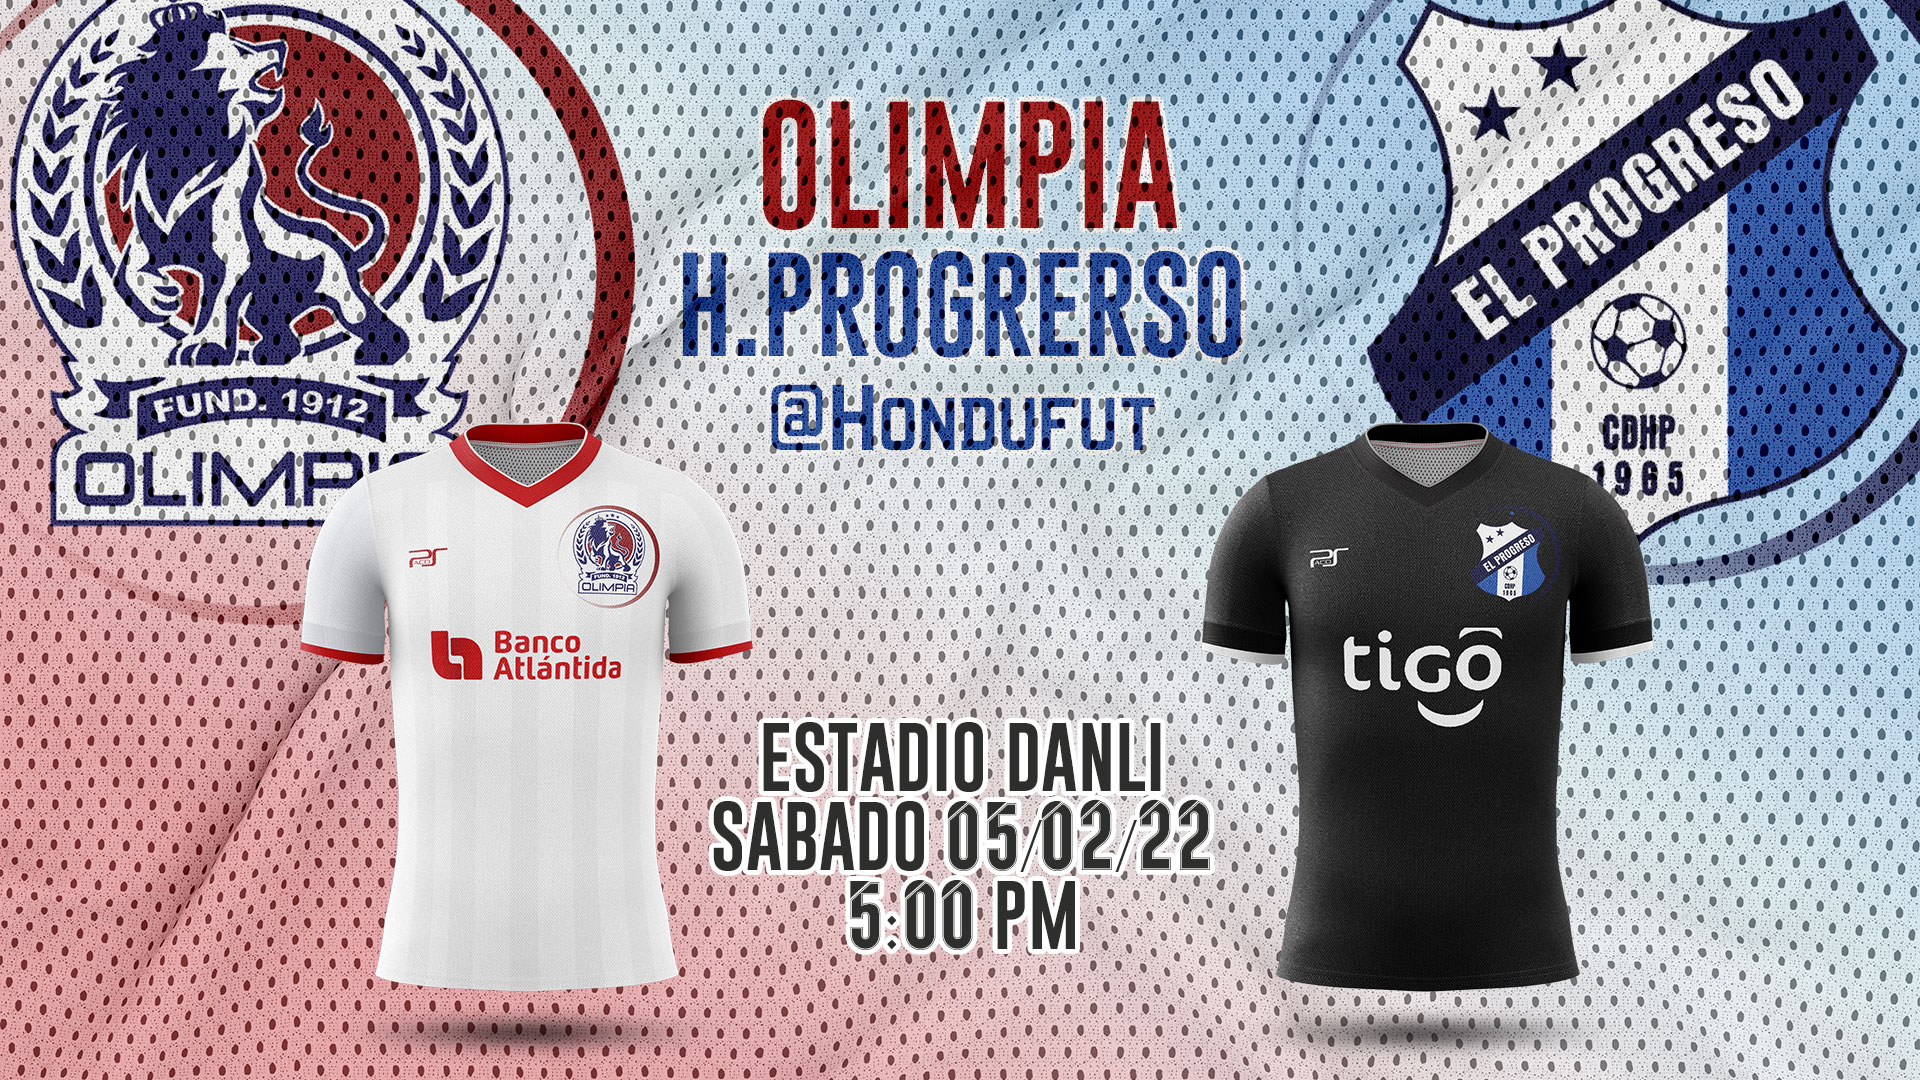 Olimpia vs Honduras Progreso